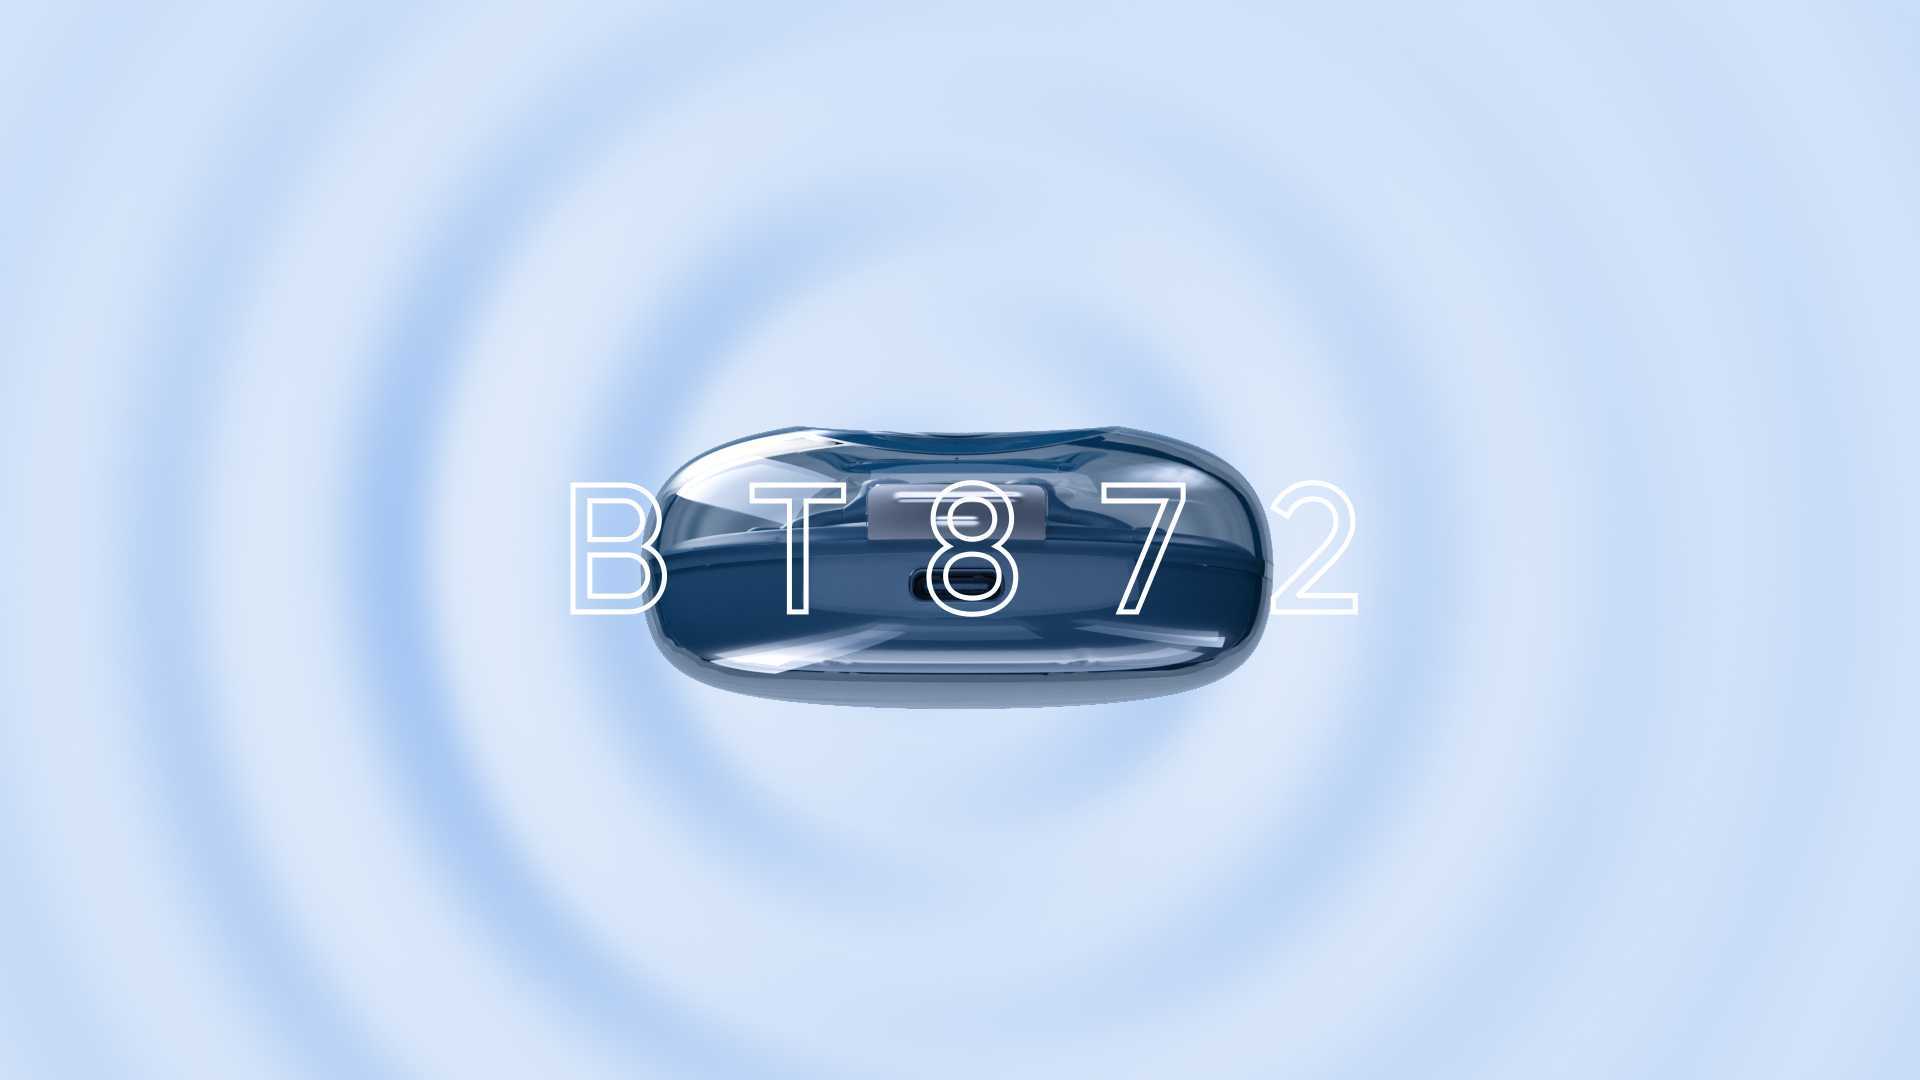 06_产品动画 I 蓝牙耳机三维动画视频BT872